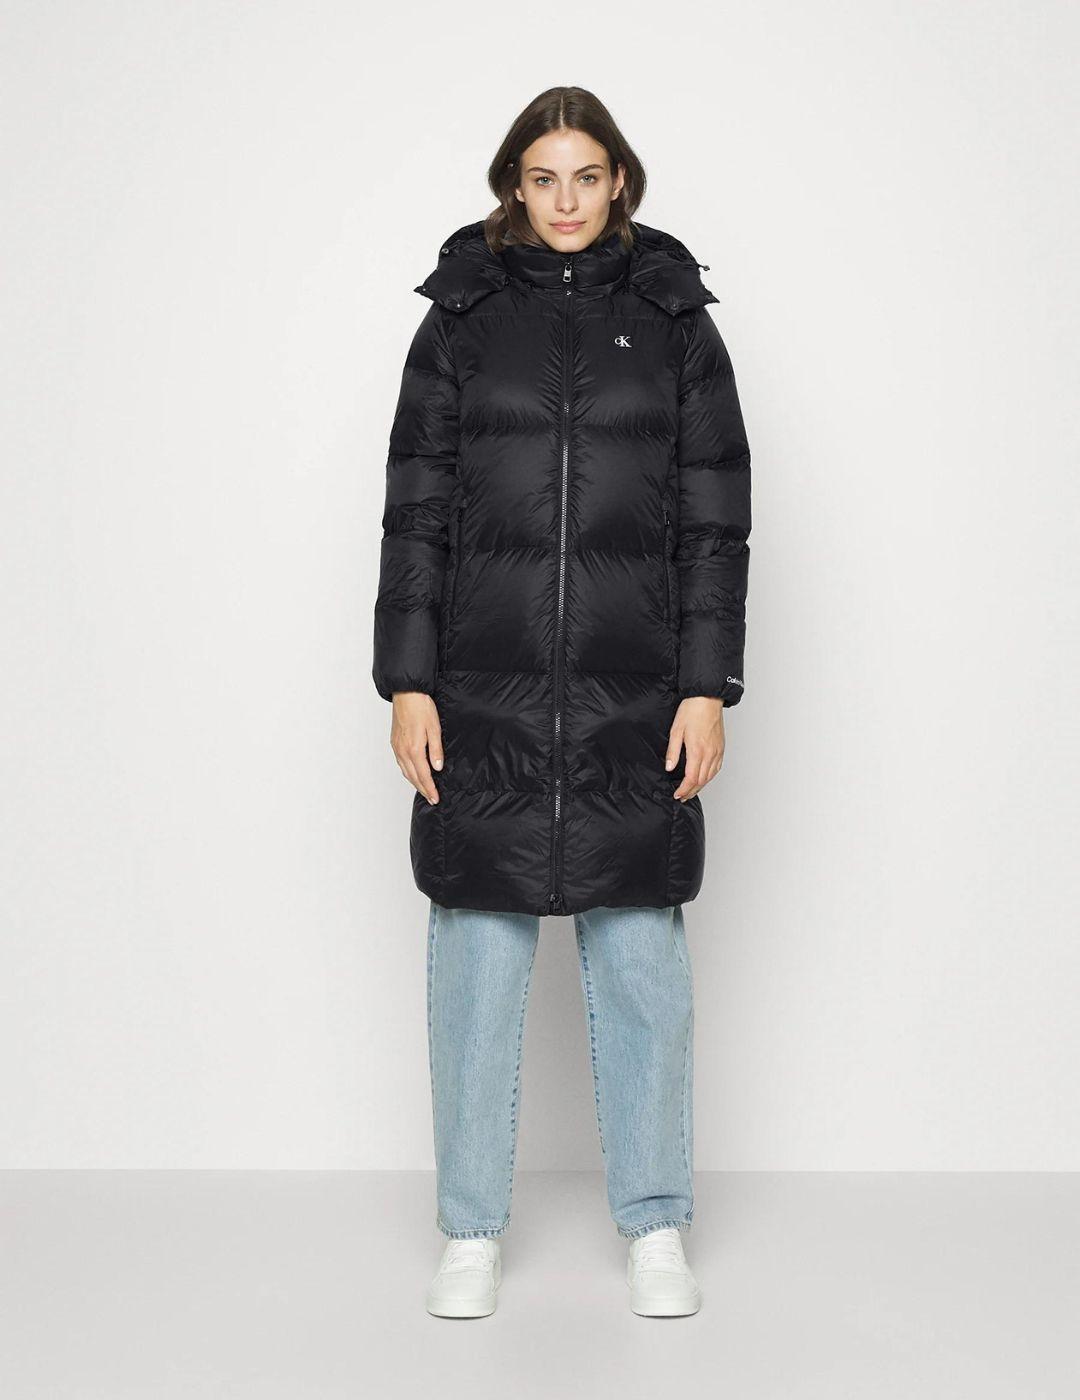 Abrigo negro largo de plumas Calvin Klein